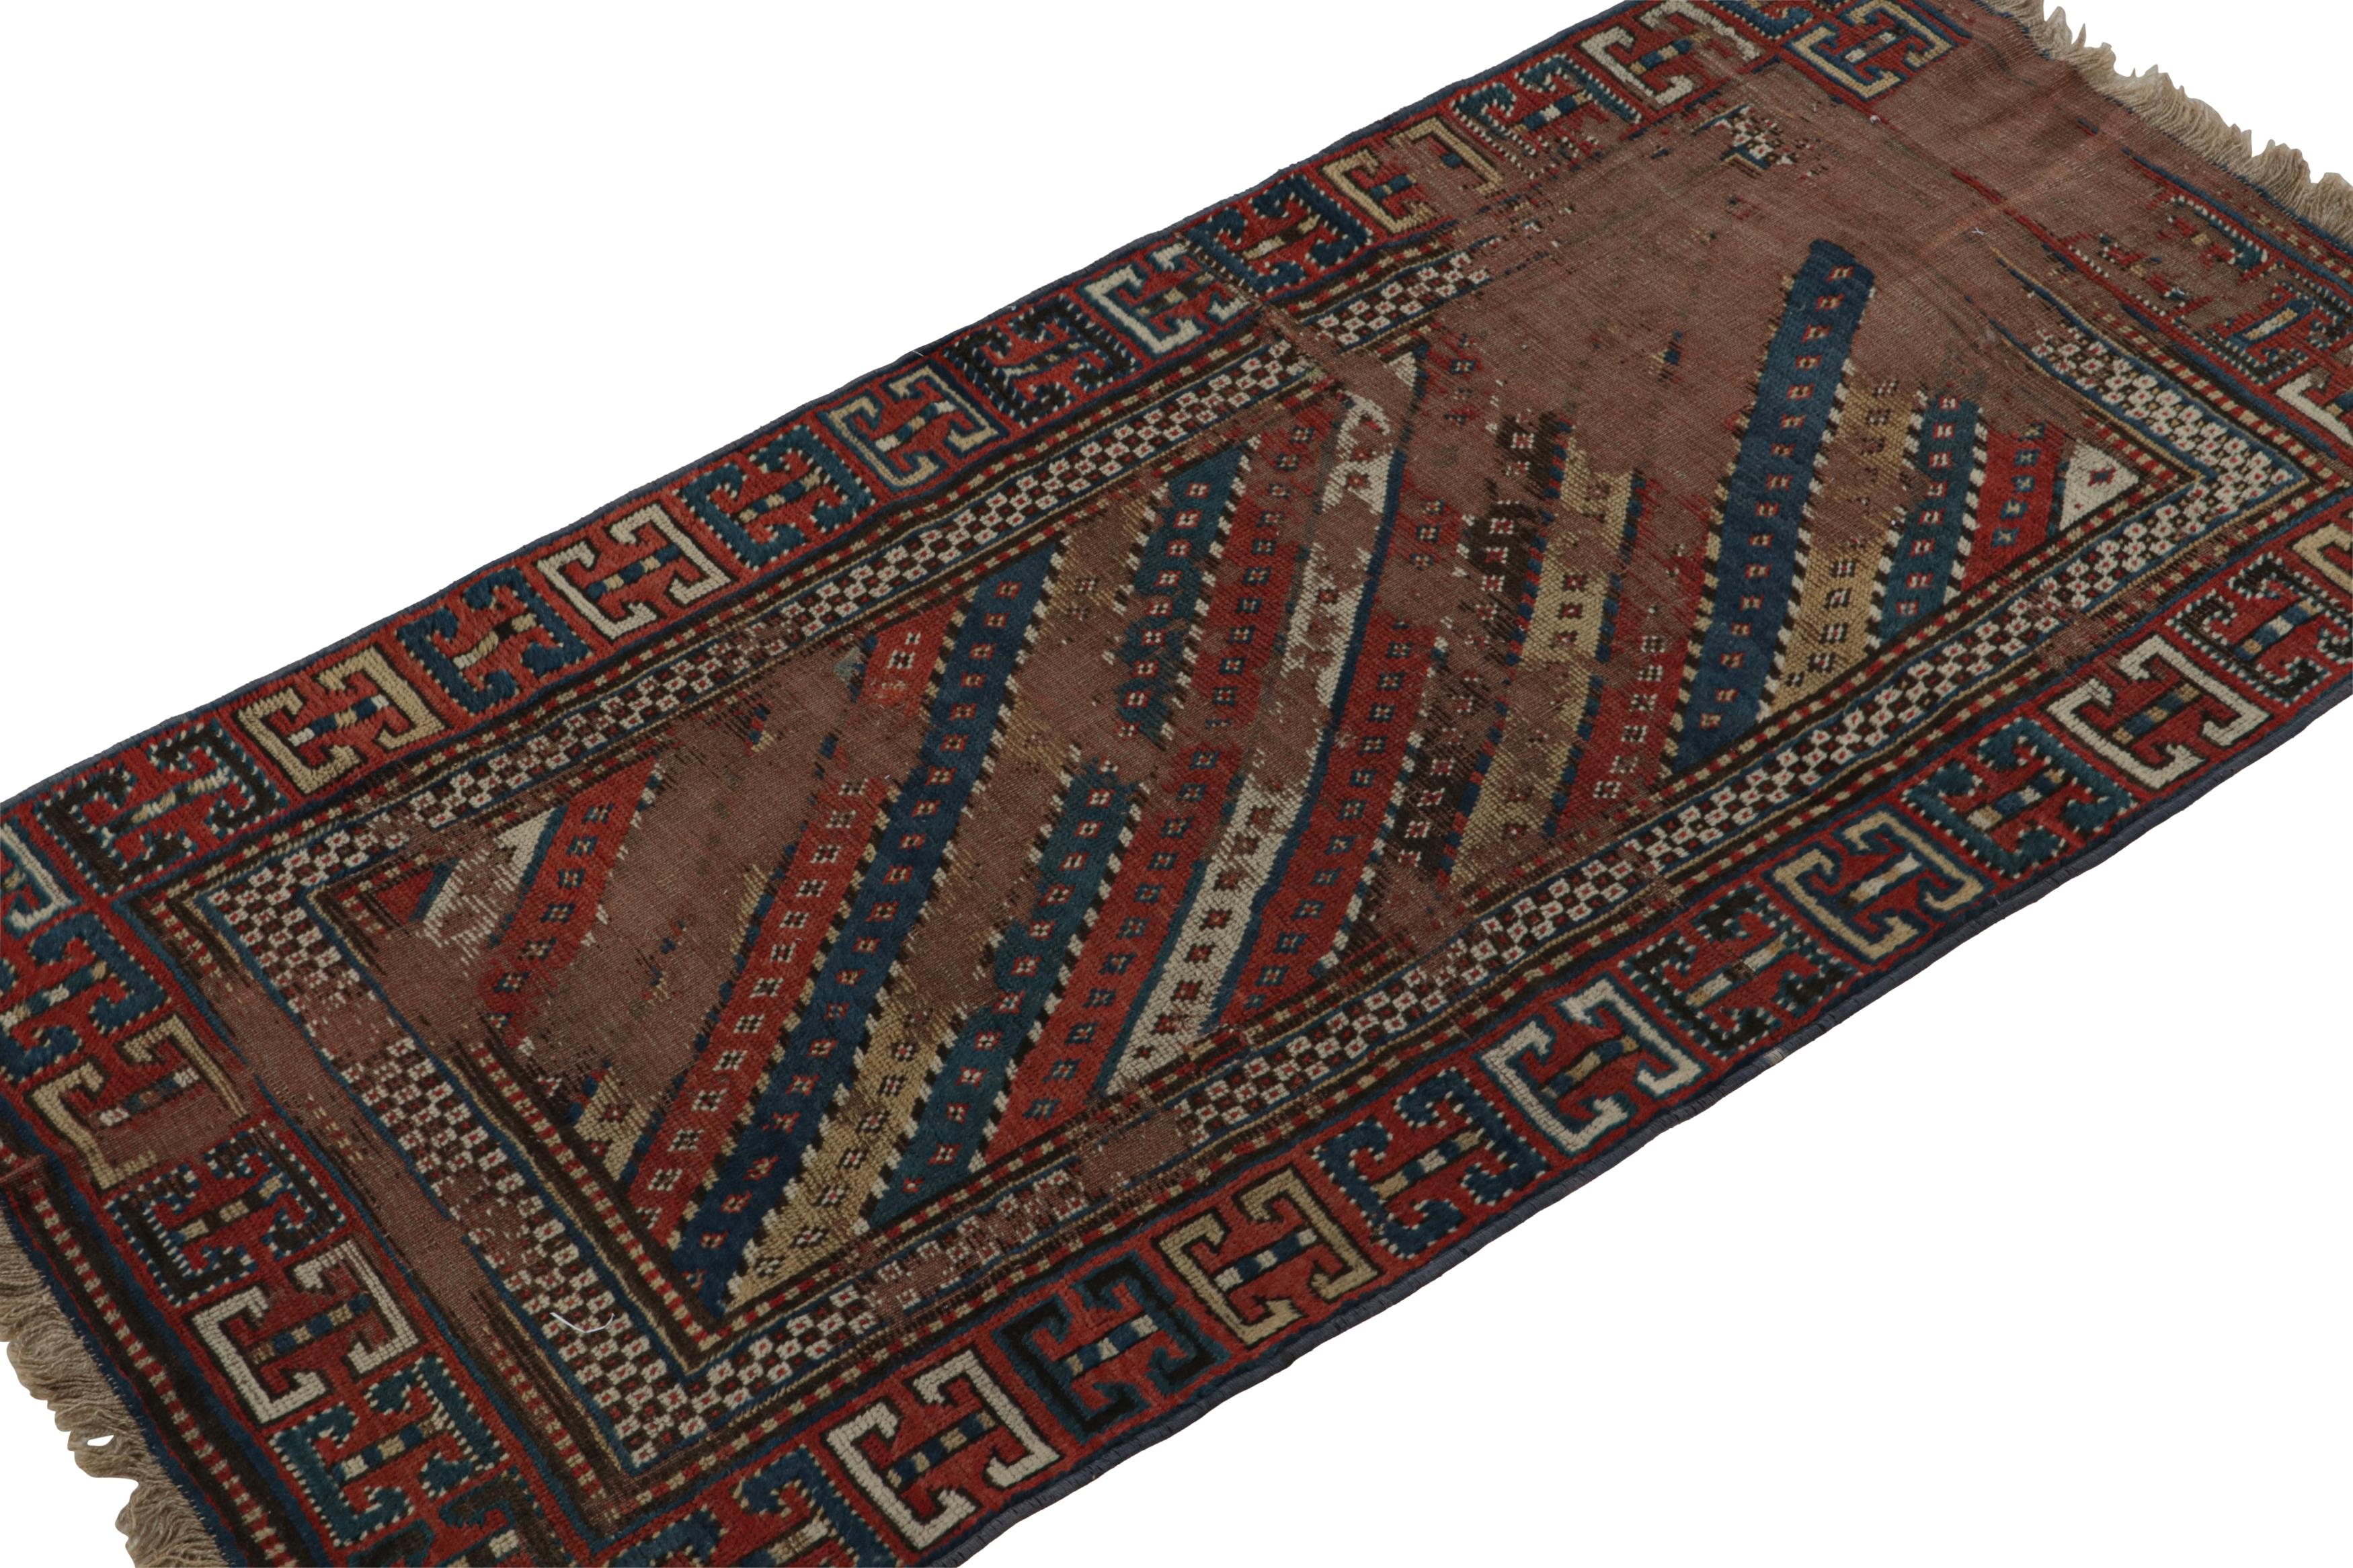 Noué à la main en laine et provenant de Russie vers 1910-1920, ce tapis de course Kazak antique 3x6 est une rare collection tribale caucasienne de Rug & Kilim.  

Sur le Design :

Cette pièce présente des motifs géométriques primitivistes dans les